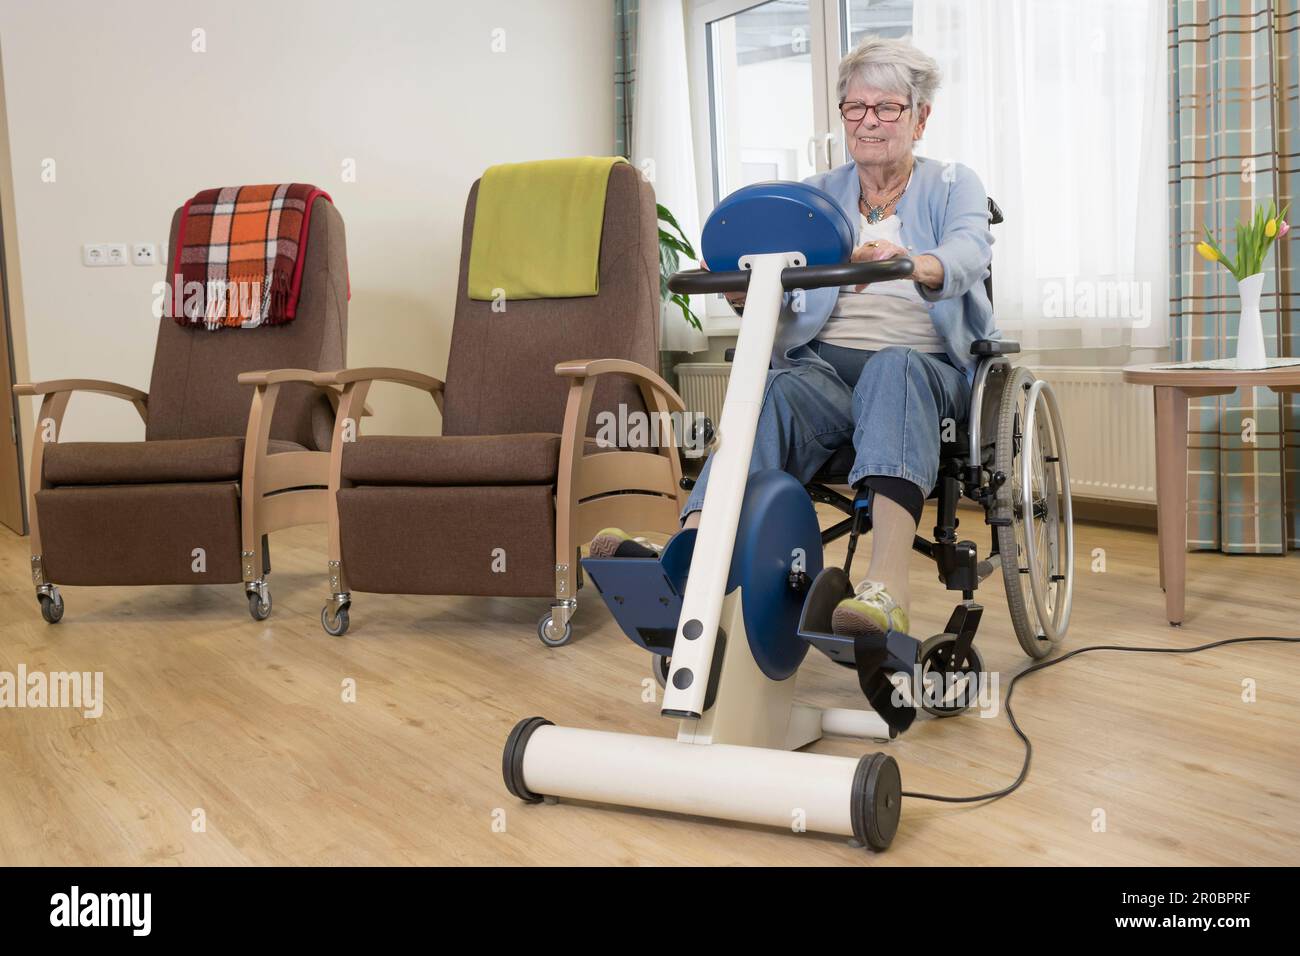 Femme âgée en fauteuil roulant s'exerçant sur un vélo d'exercice dans une maison de repos Banque D'Images